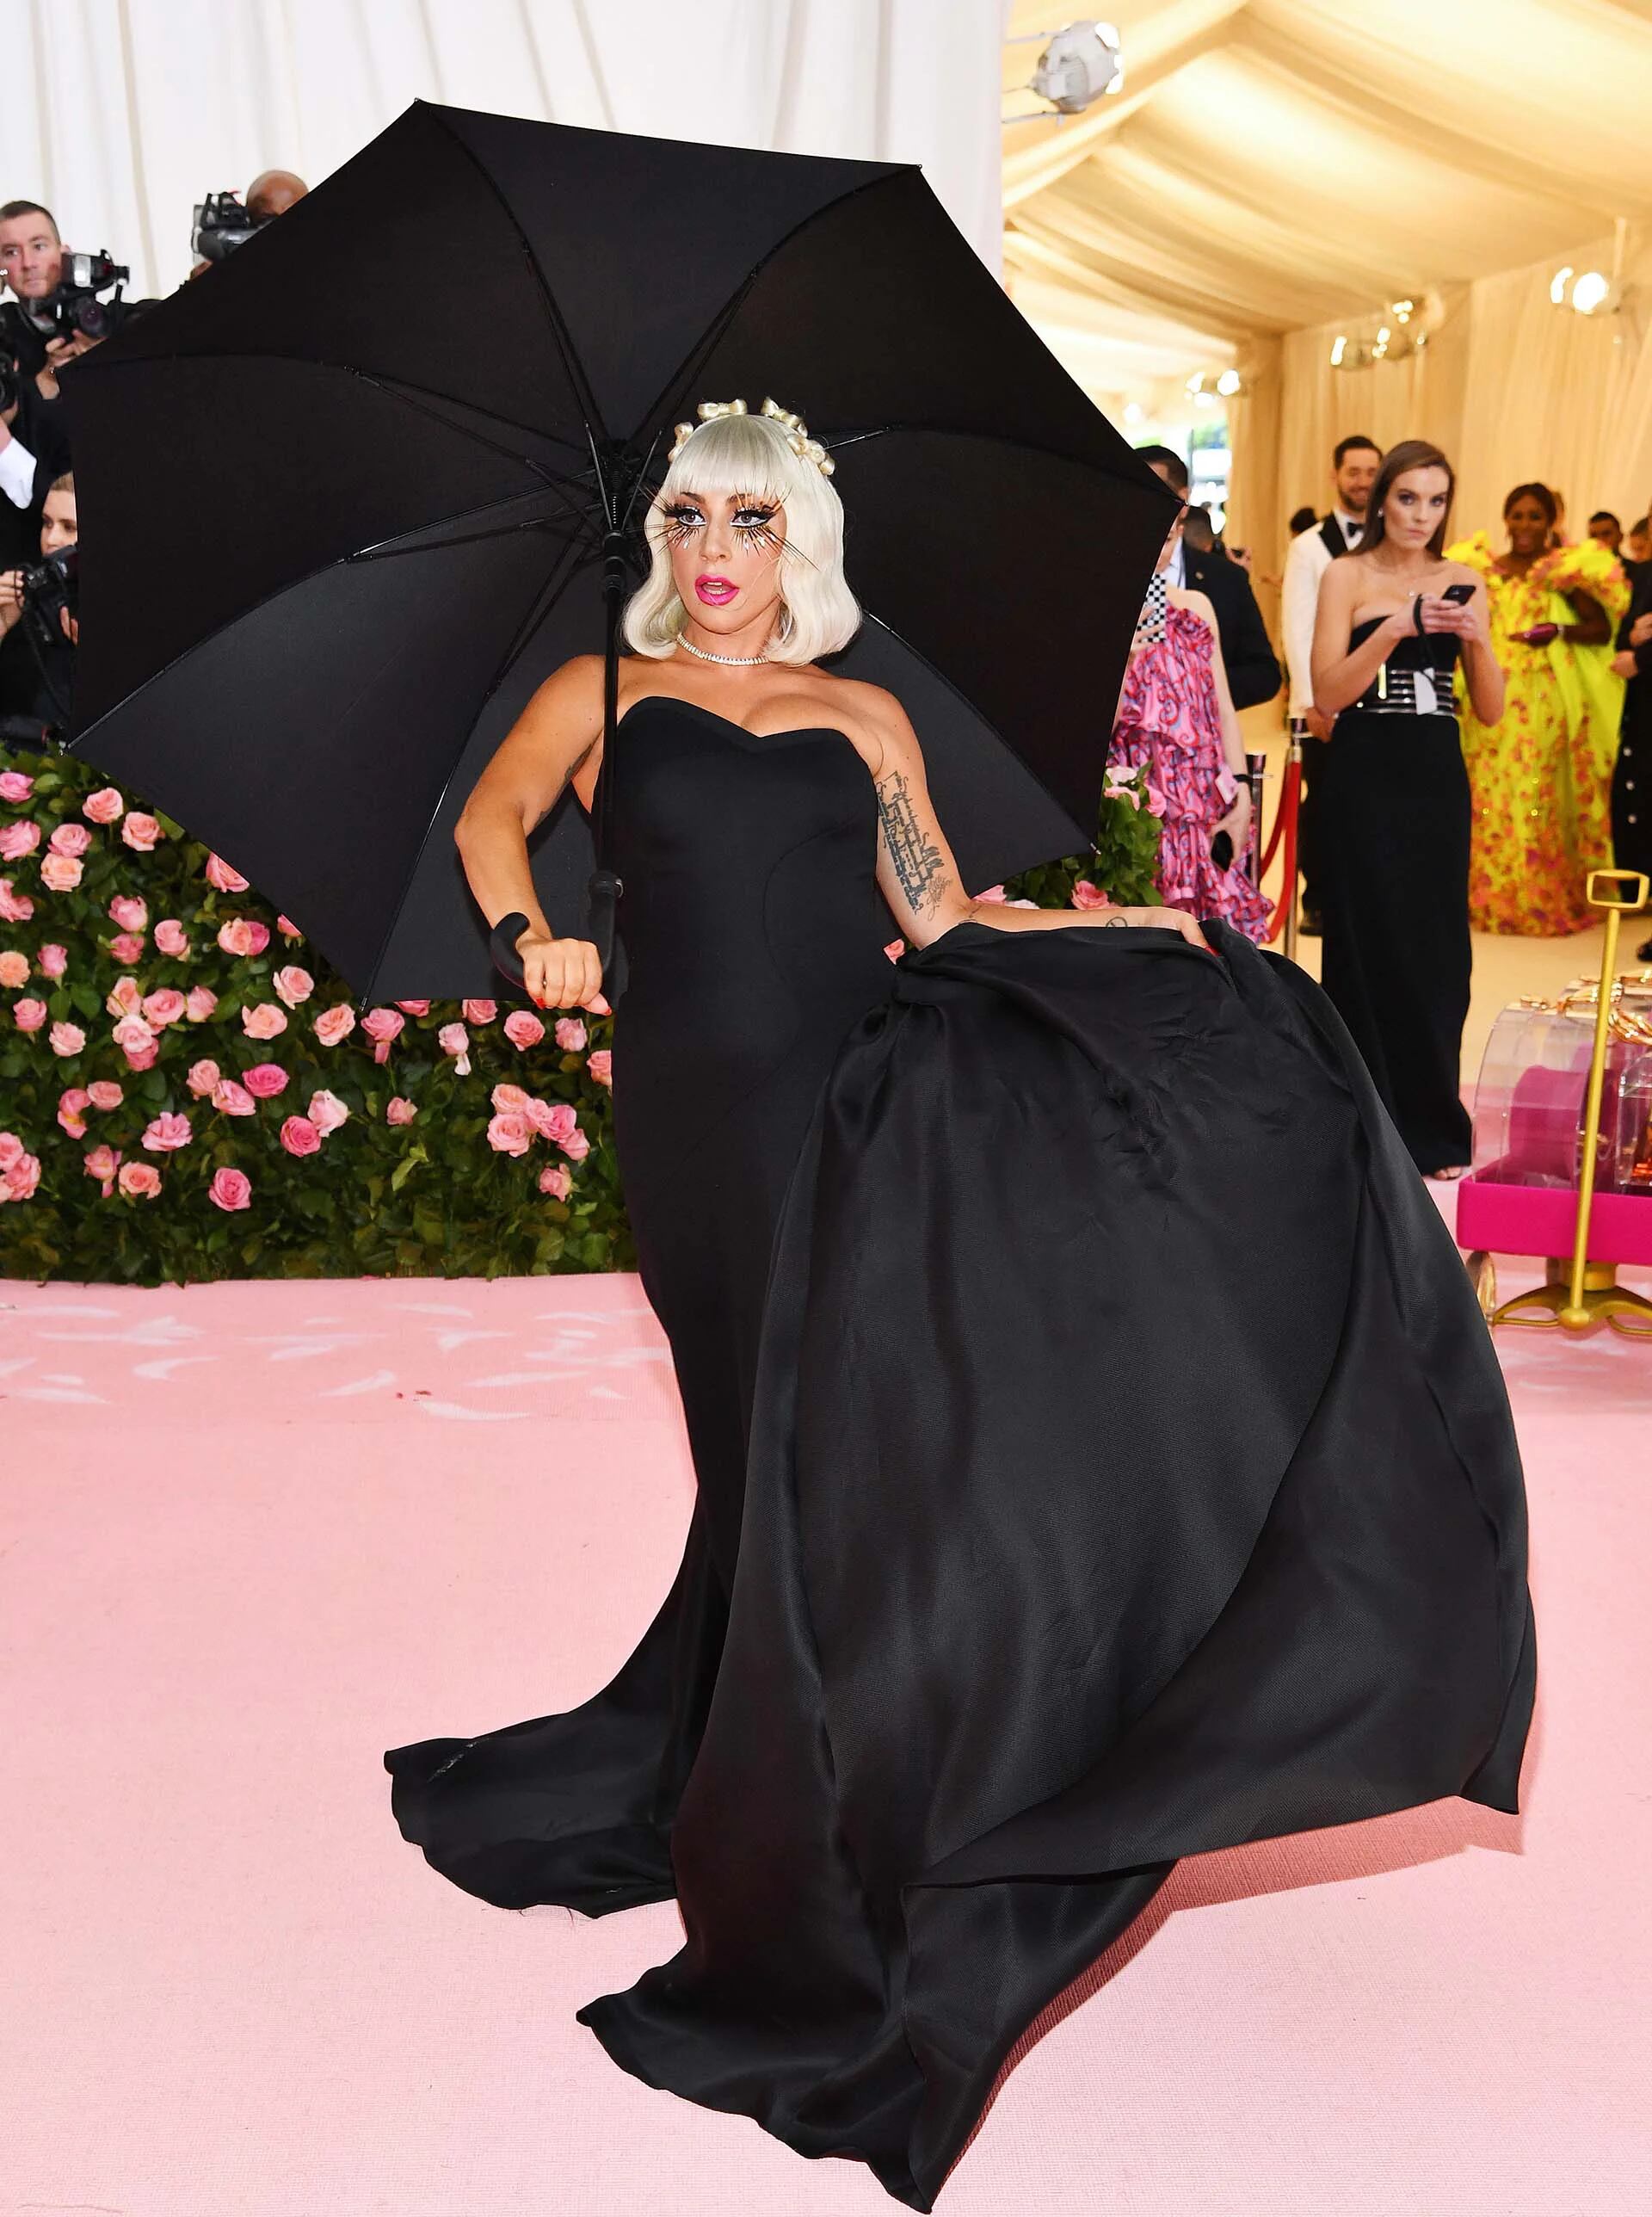 Debajo del eterno vestido fucsia, Gaga lucía un vestido corset negro